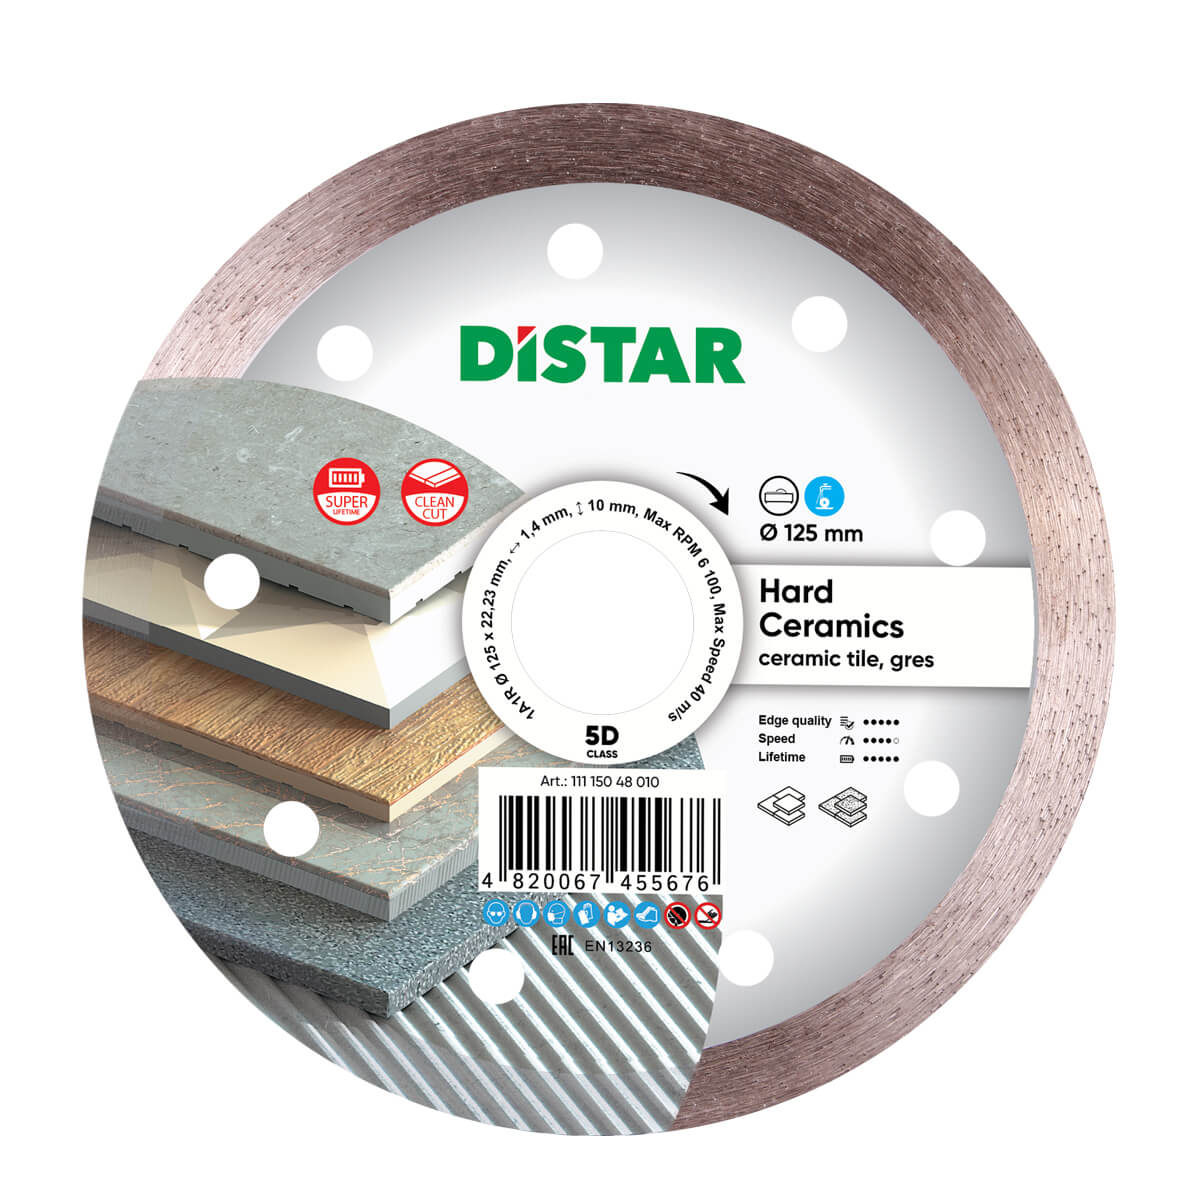 Диск алмазный отрезной по керамограниту и керамике для УШМ Distar 125 мм Hard ceramics 5D диск алмазный отрезной по керамике и керамограниту для ушм distar 1a1r 115мм decor slim 5d